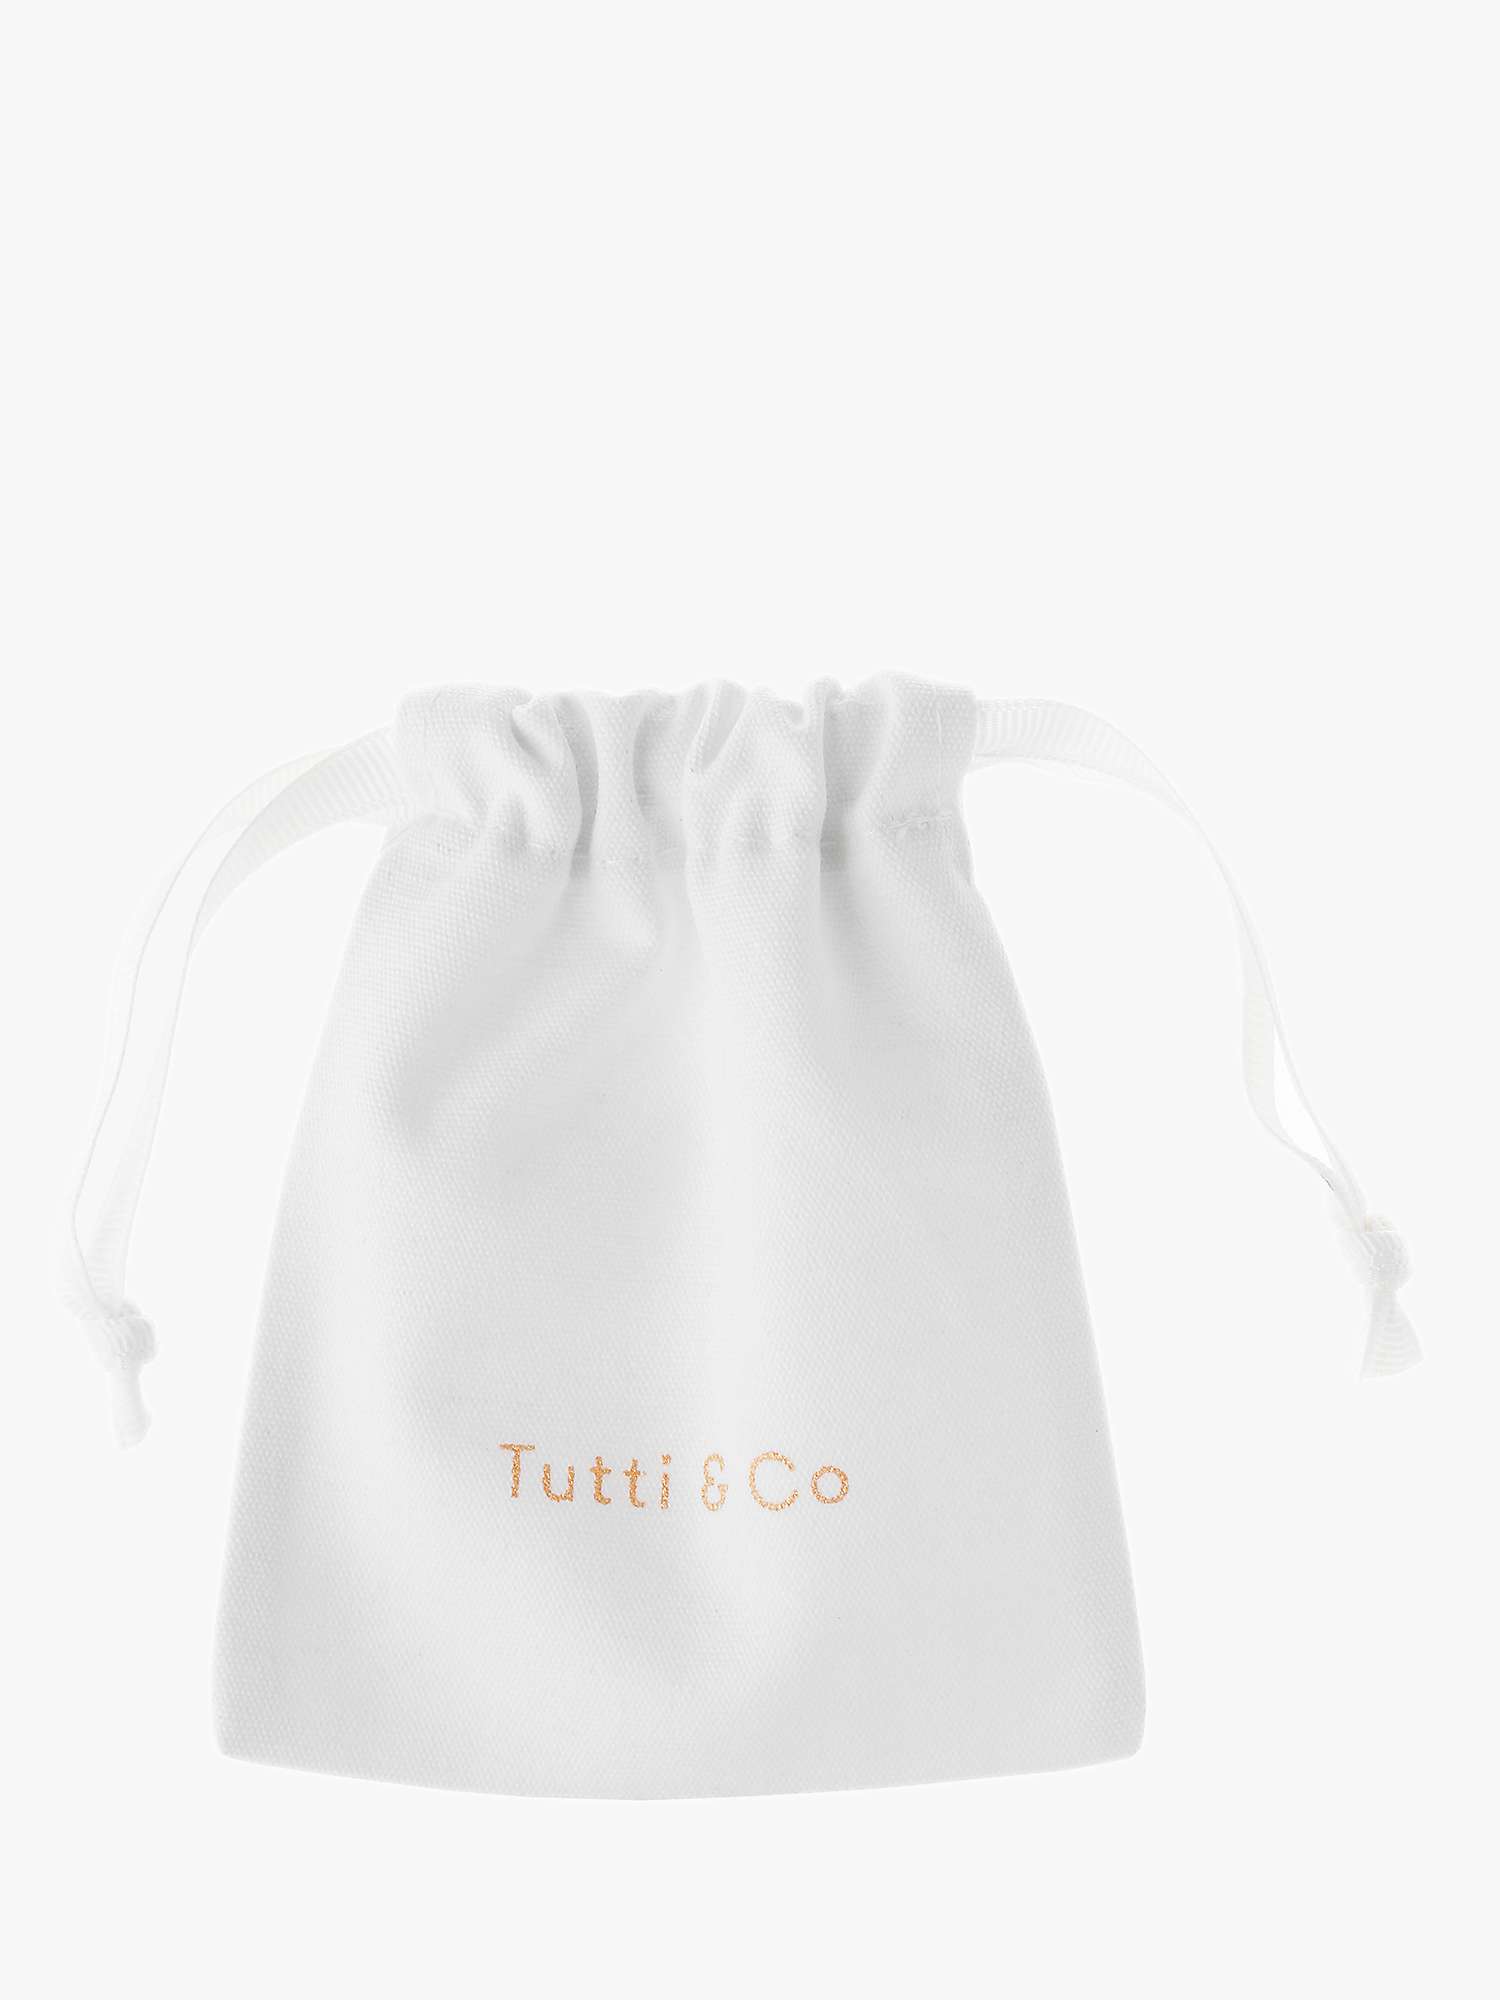 Buy Tutti & Co May Birthstone Hoop Earrings, Green Onyx Online at johnlewis.com